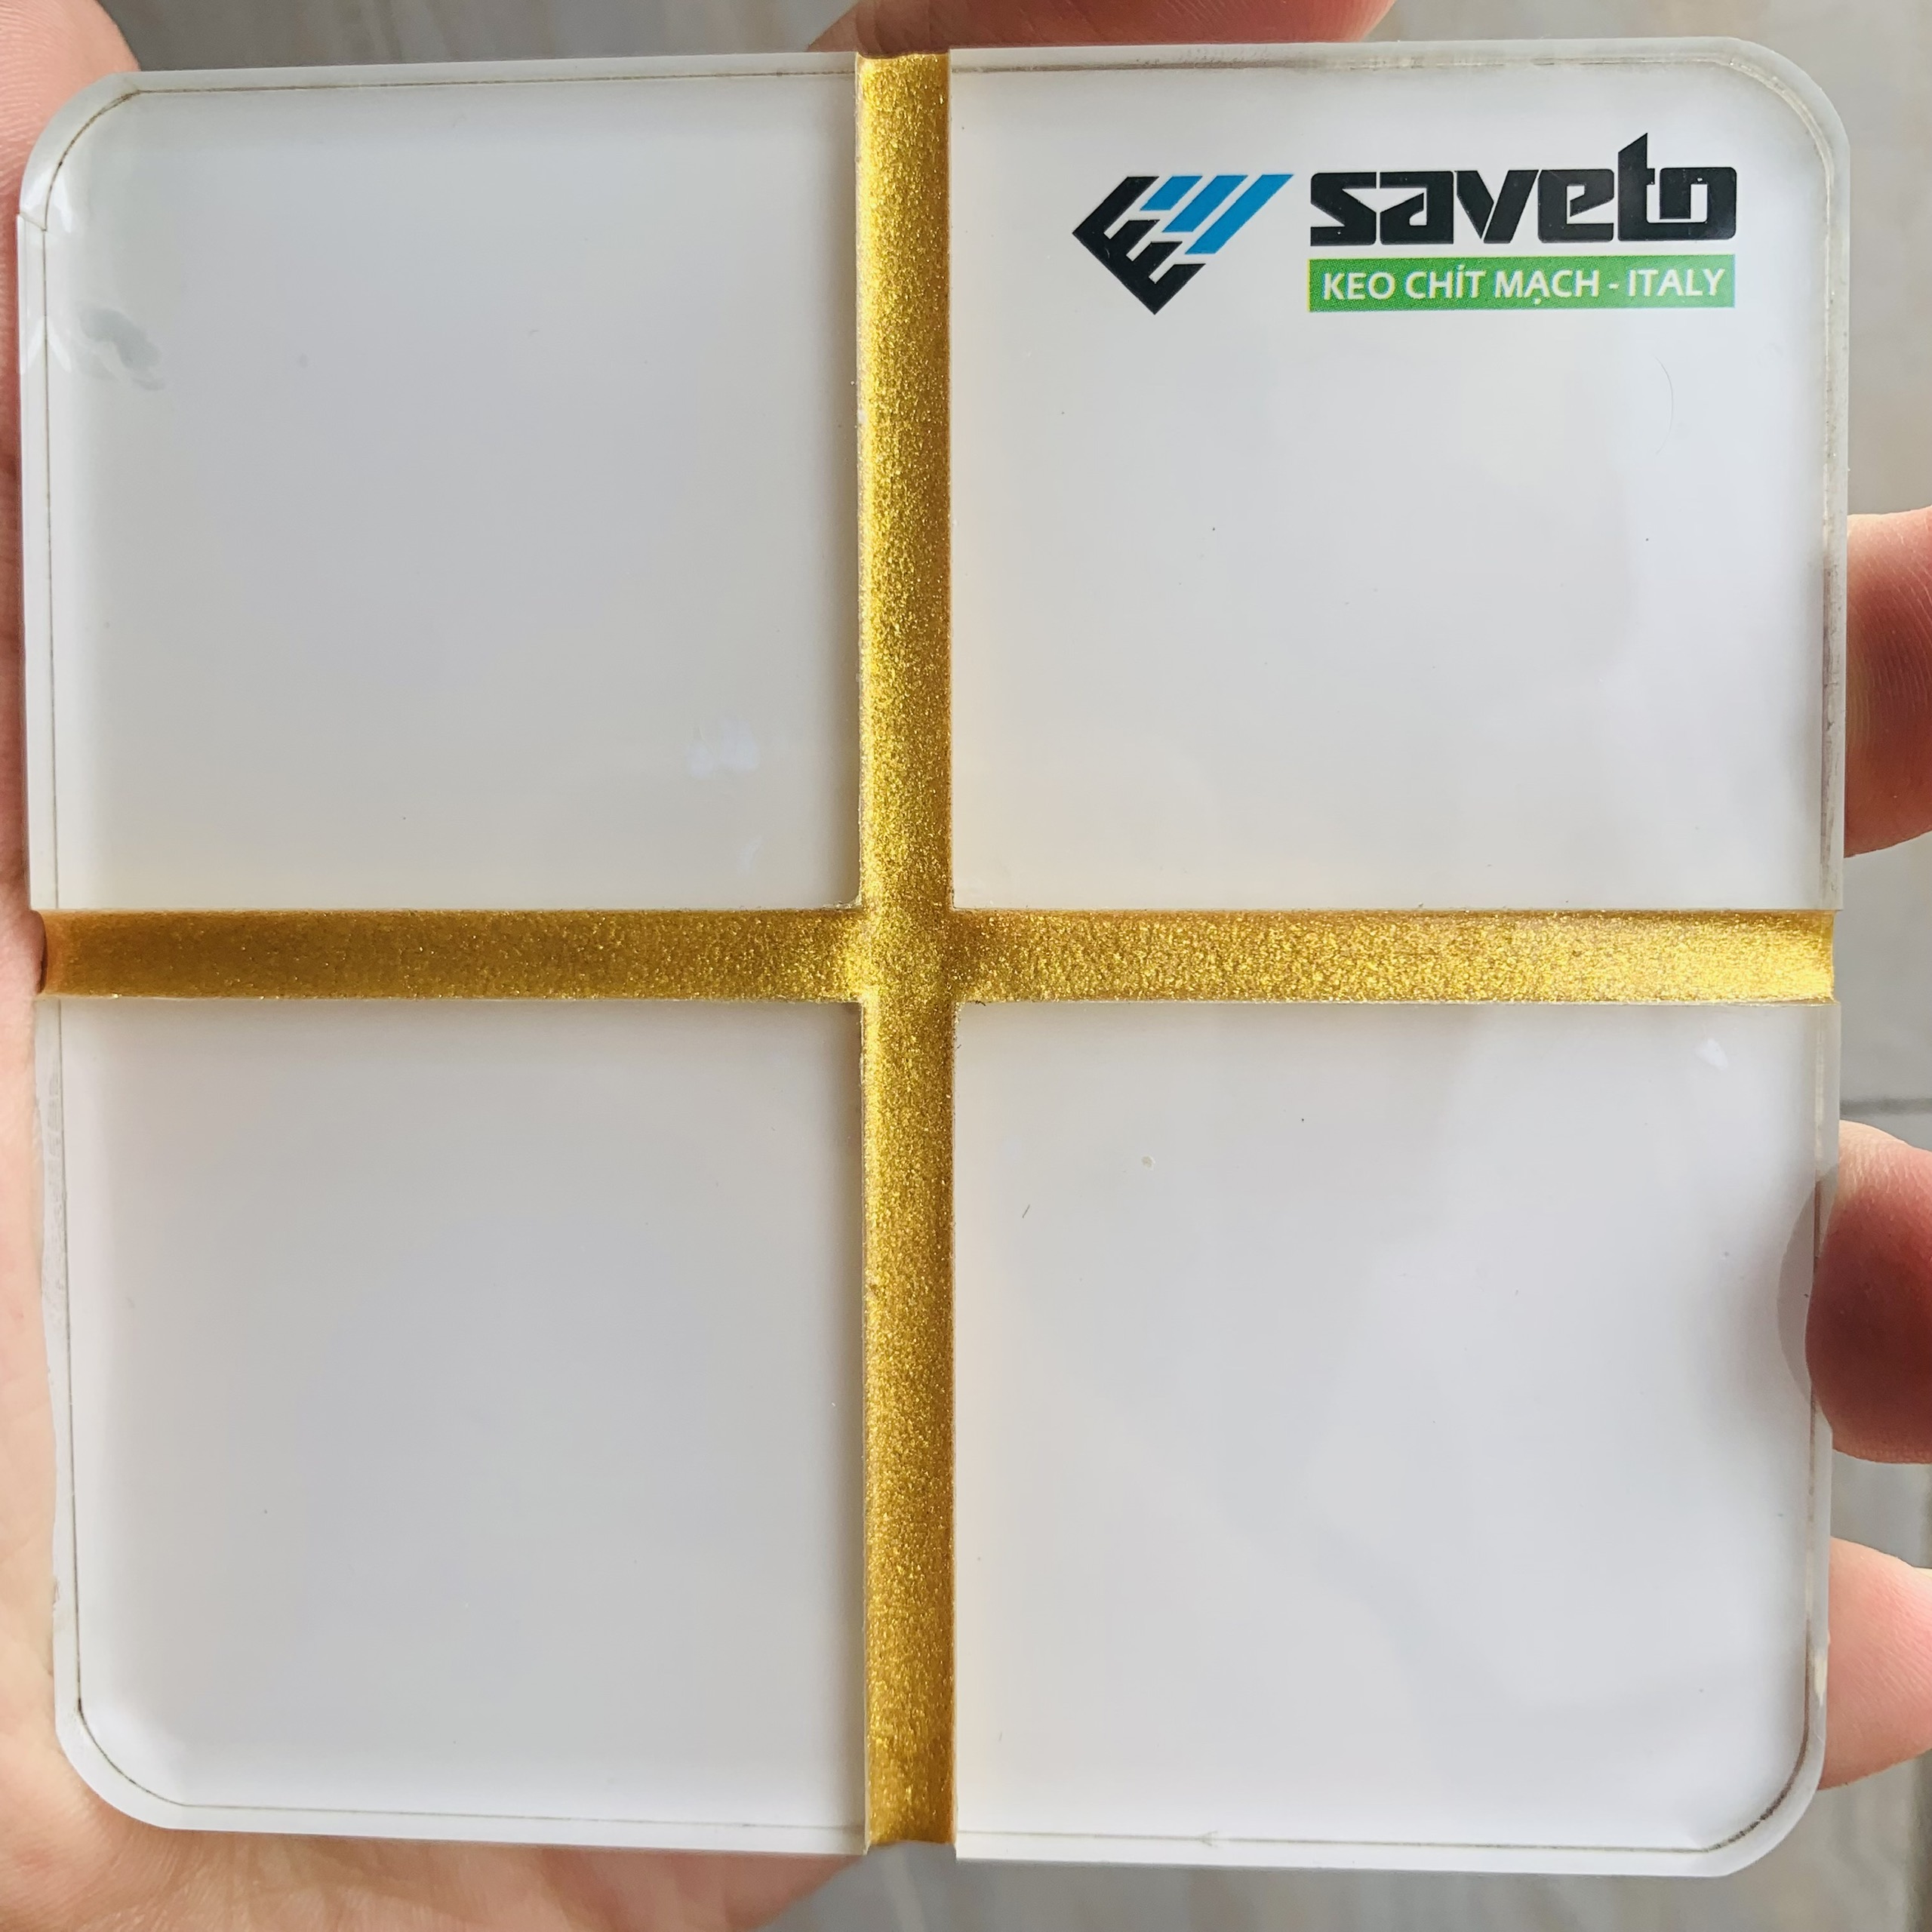 Bộ dụng cụ chà ron gạch Saveto- keo chà ron gạch Saveto 2 thành phần, cao cấp chính hãng chống thấm-chống bám bẩn